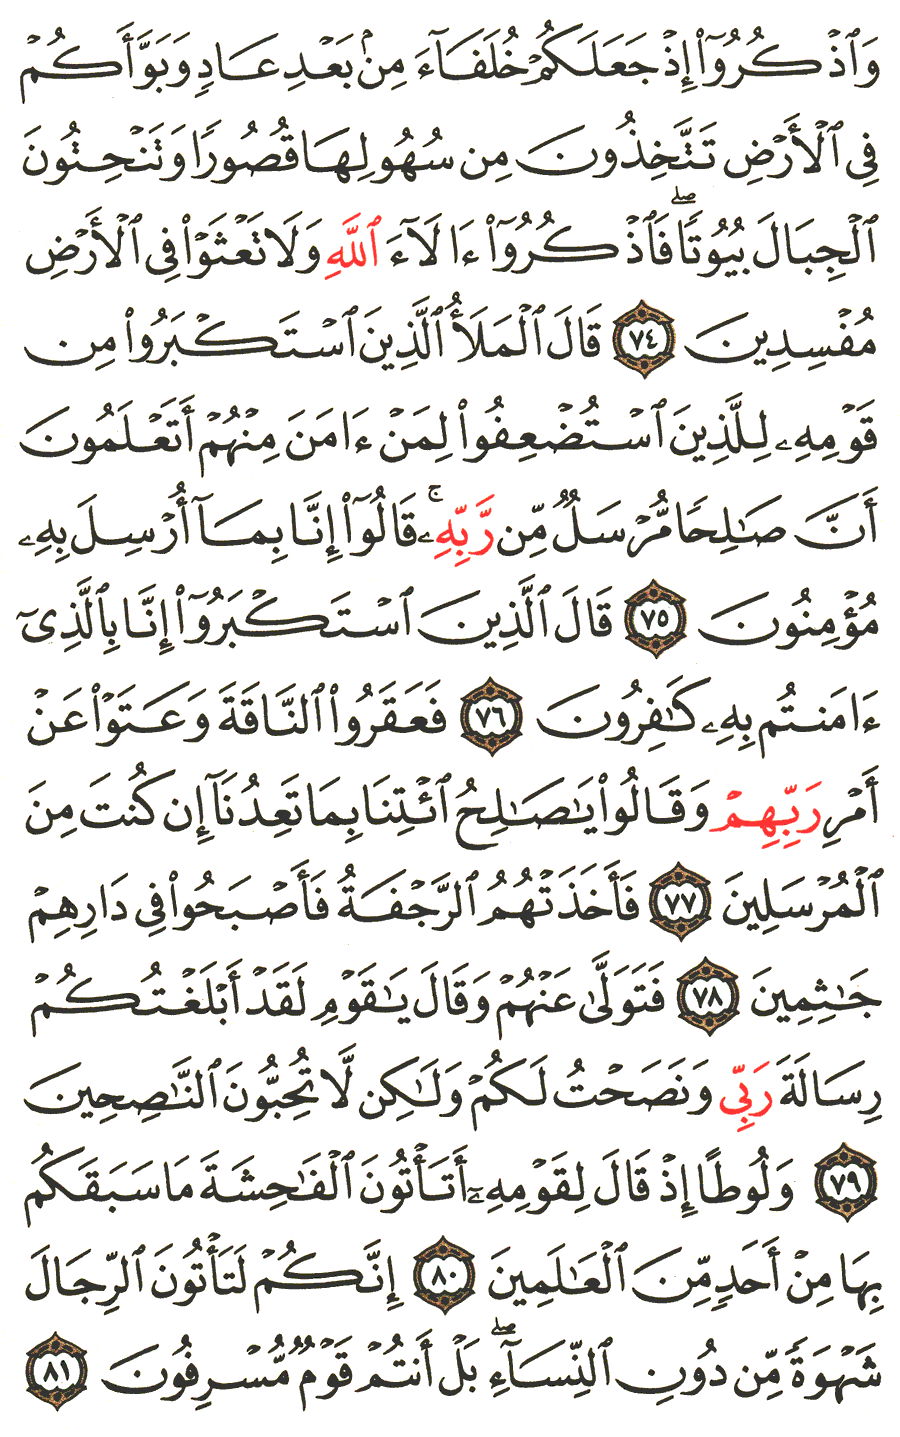 الصفحة 160 من القرآن الكريم